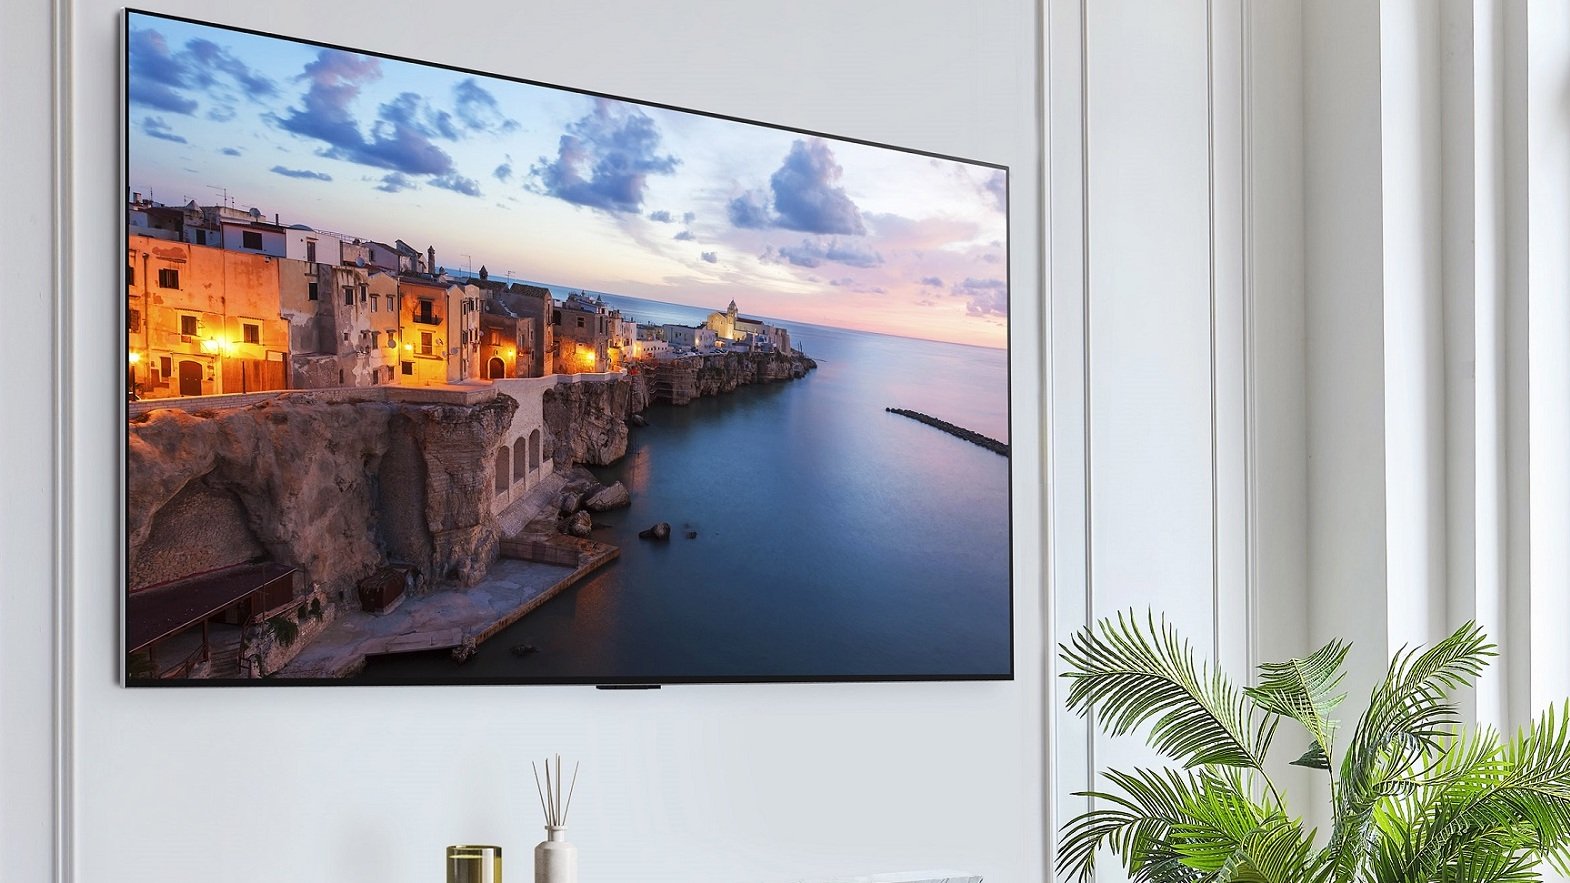 Panelowy telewizor LG G3 OLED wiszący na ścianie w salonie